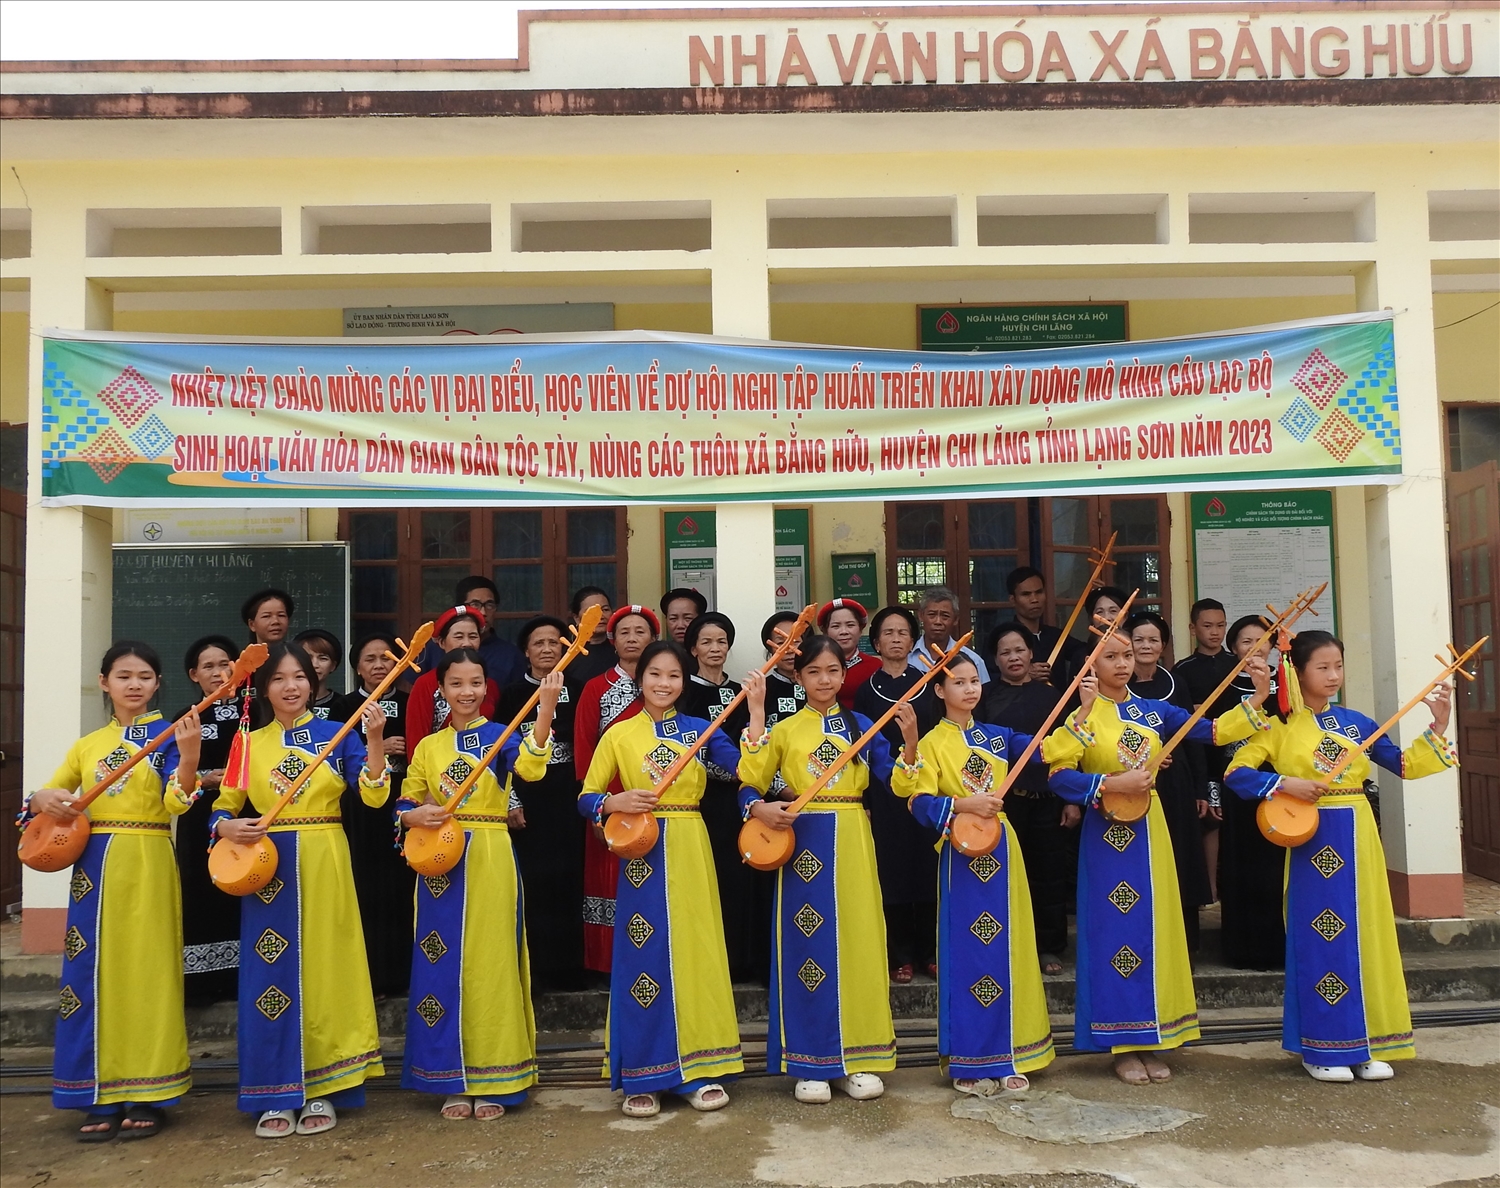 Nhiều Câu lạc bộ sinh hoạt văn hóa dân gian dân tộc Tày, Nùng các thôn ở xã Bằng Hữu được thành lập và đi vào hoạt động hiệu quả